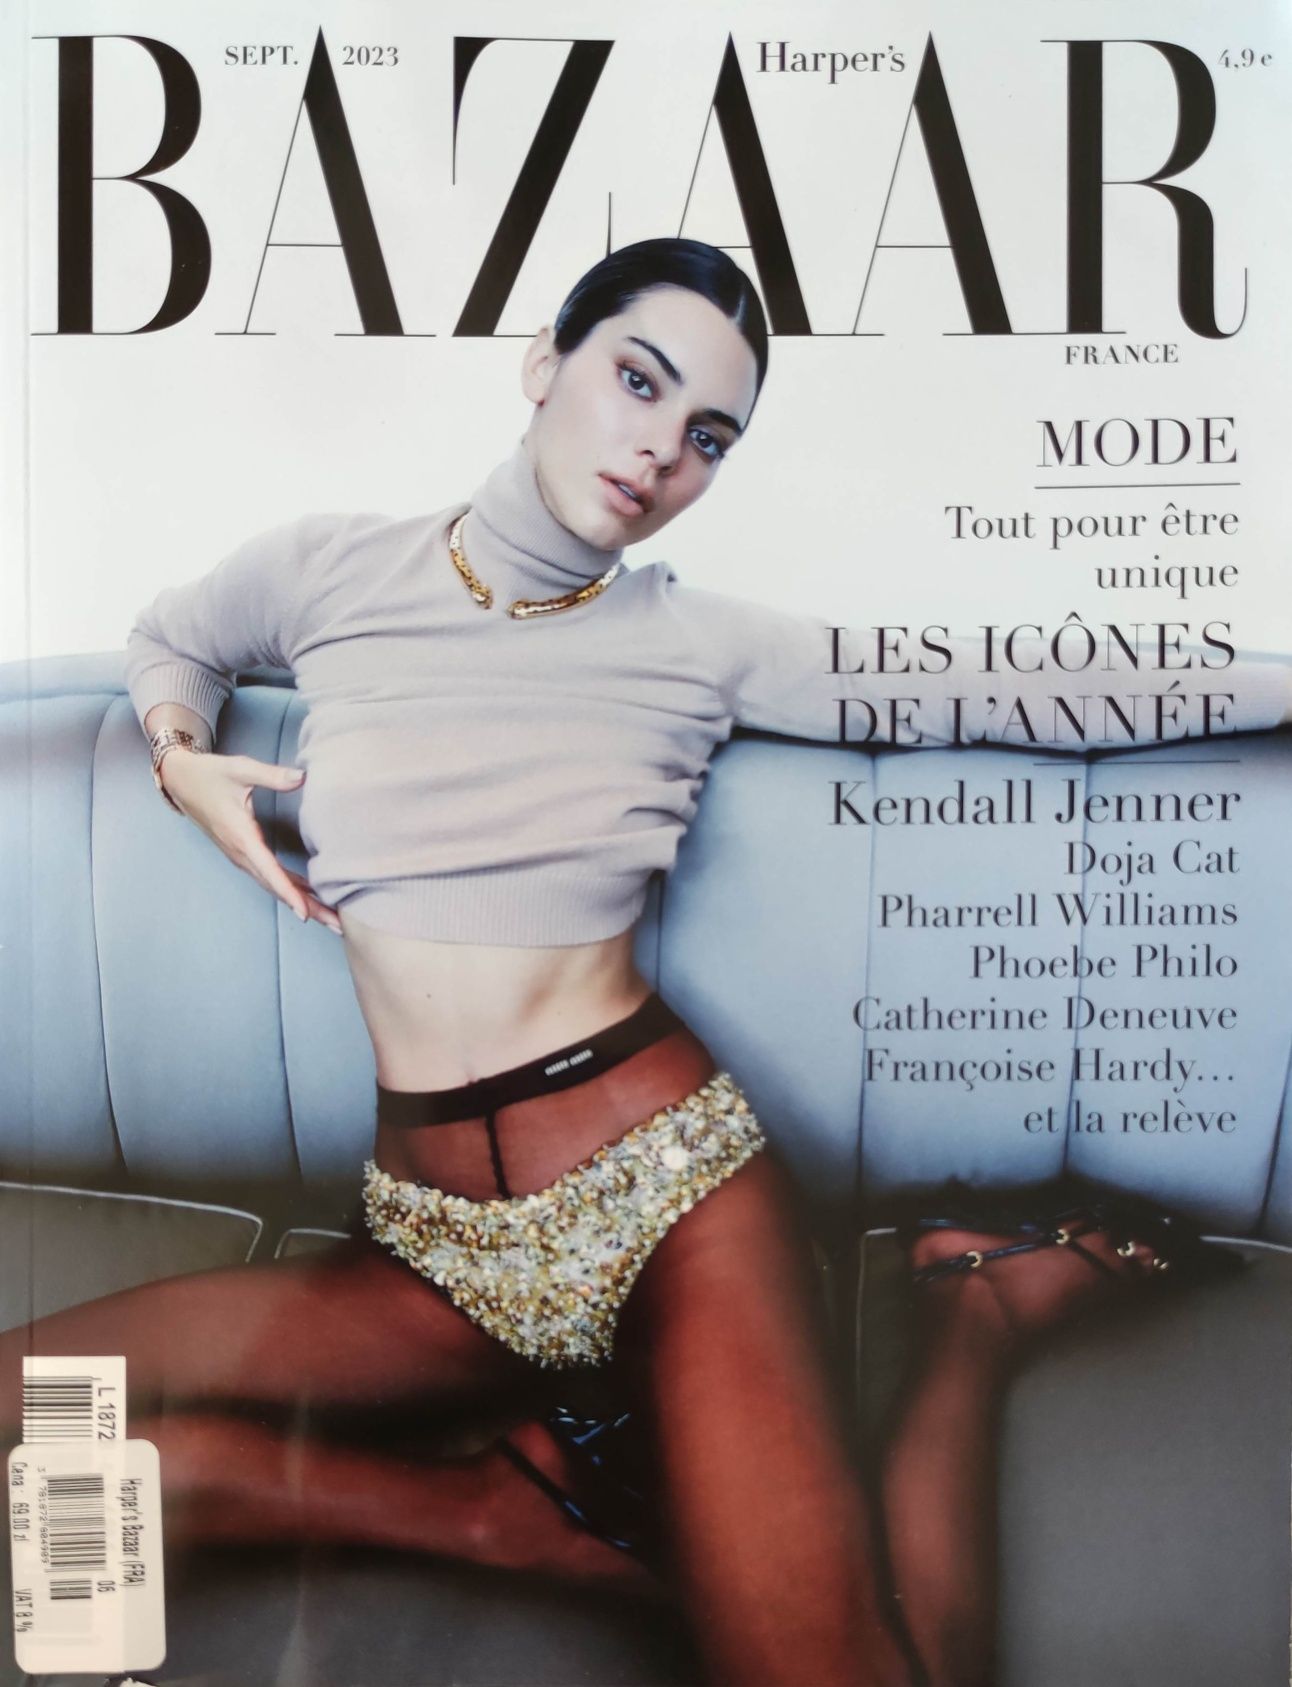 Harper's Baazar 09/23 Ikony: K.Jenner, Doja Cat, Greta Lee Francja